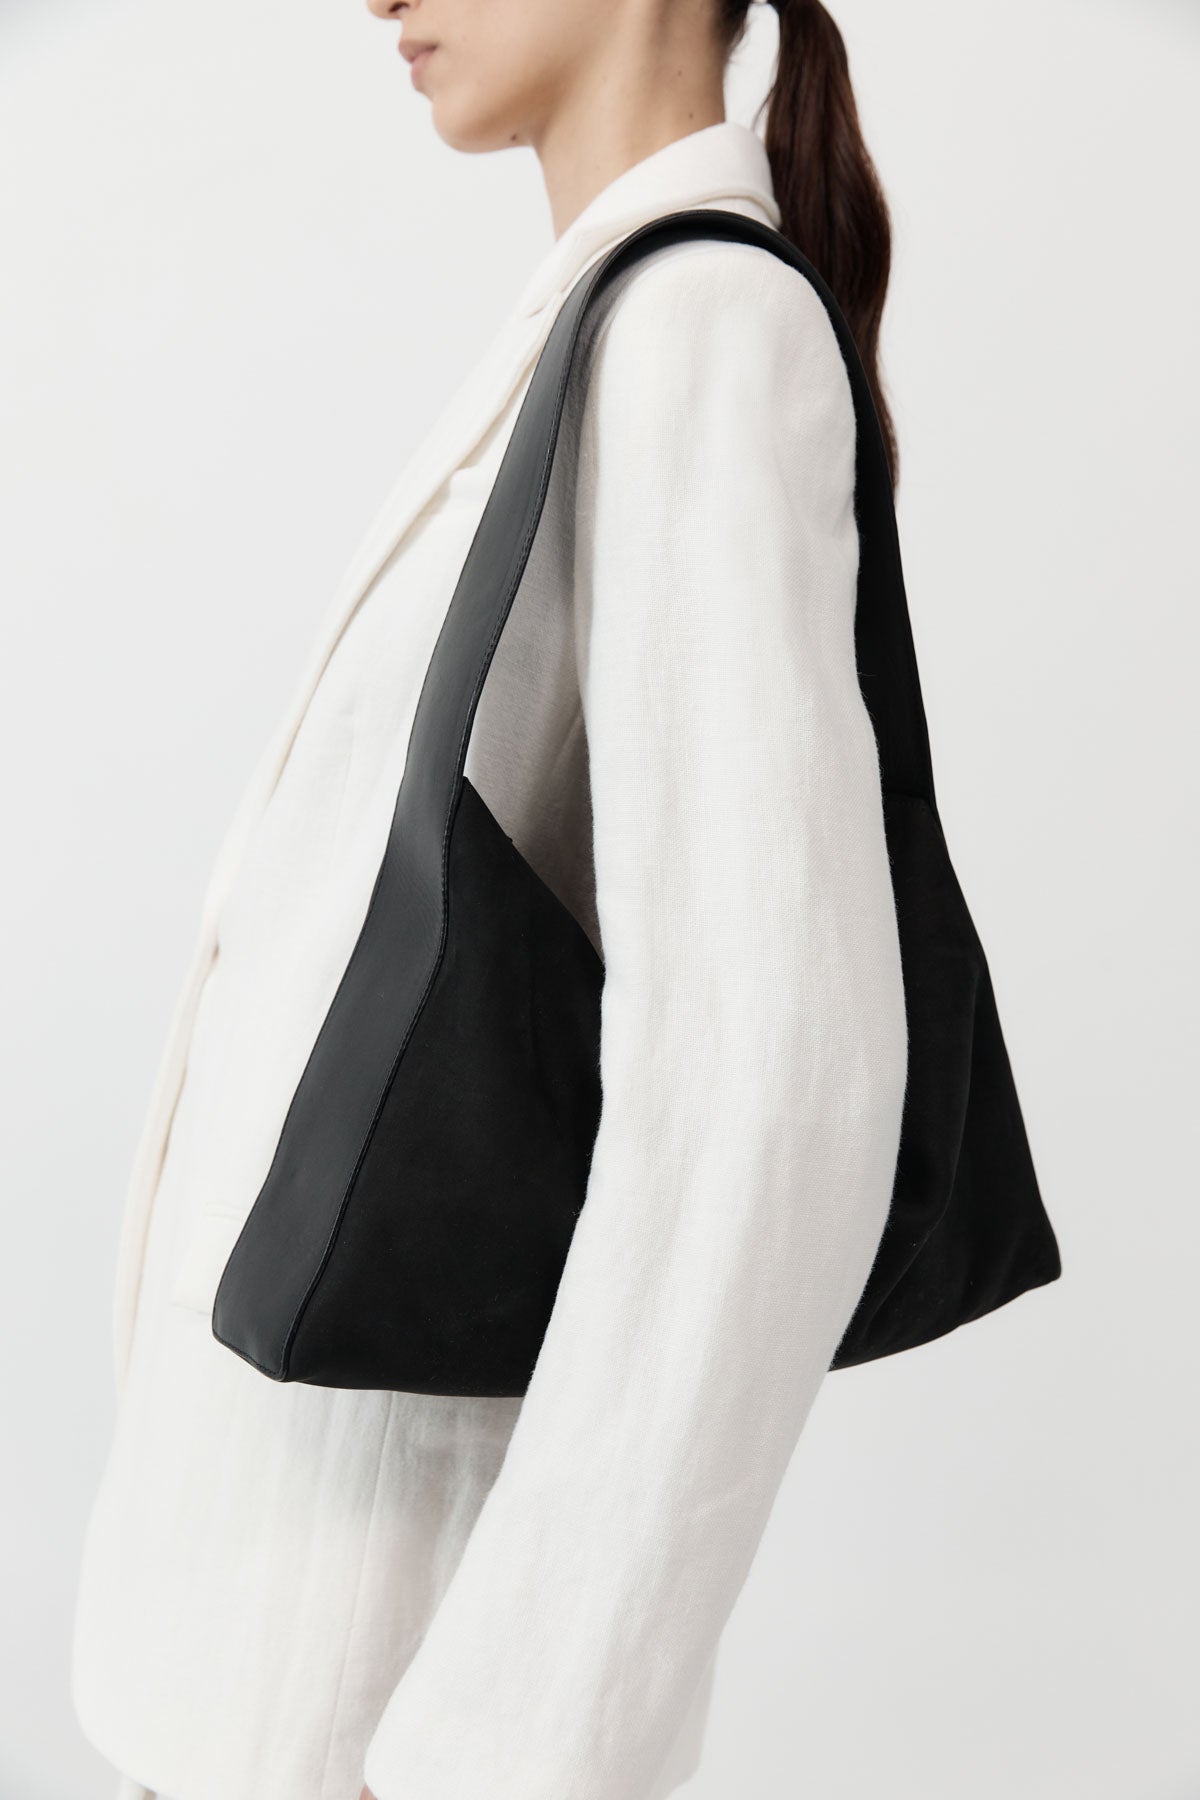 Soft Form Bag - Black